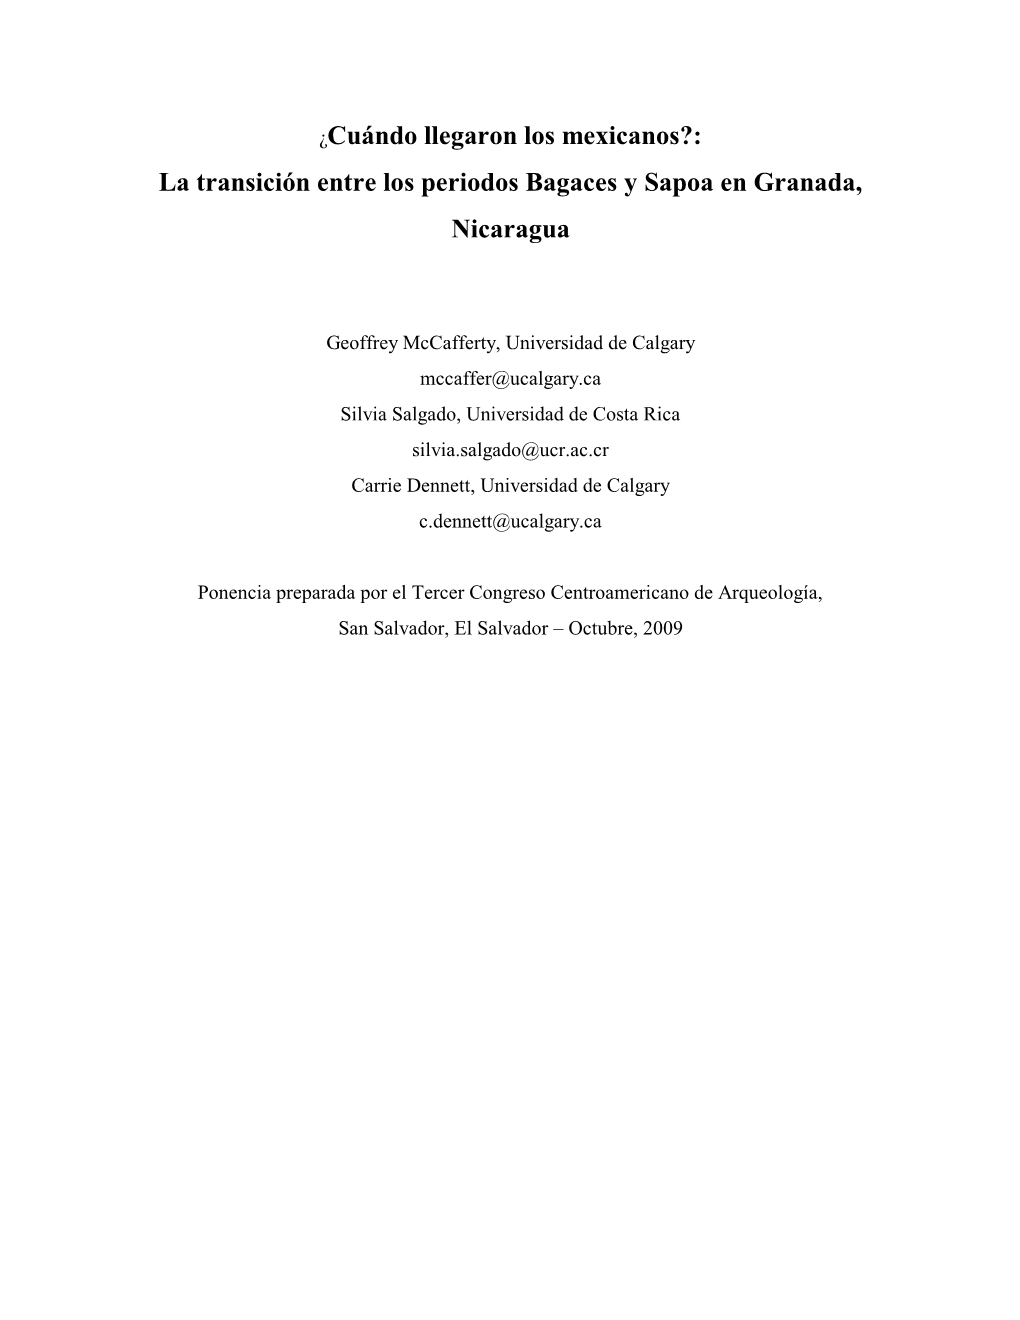 La Transición Entre Los Periodos Bagaces Y Sapoa En Granada, Nicaragua